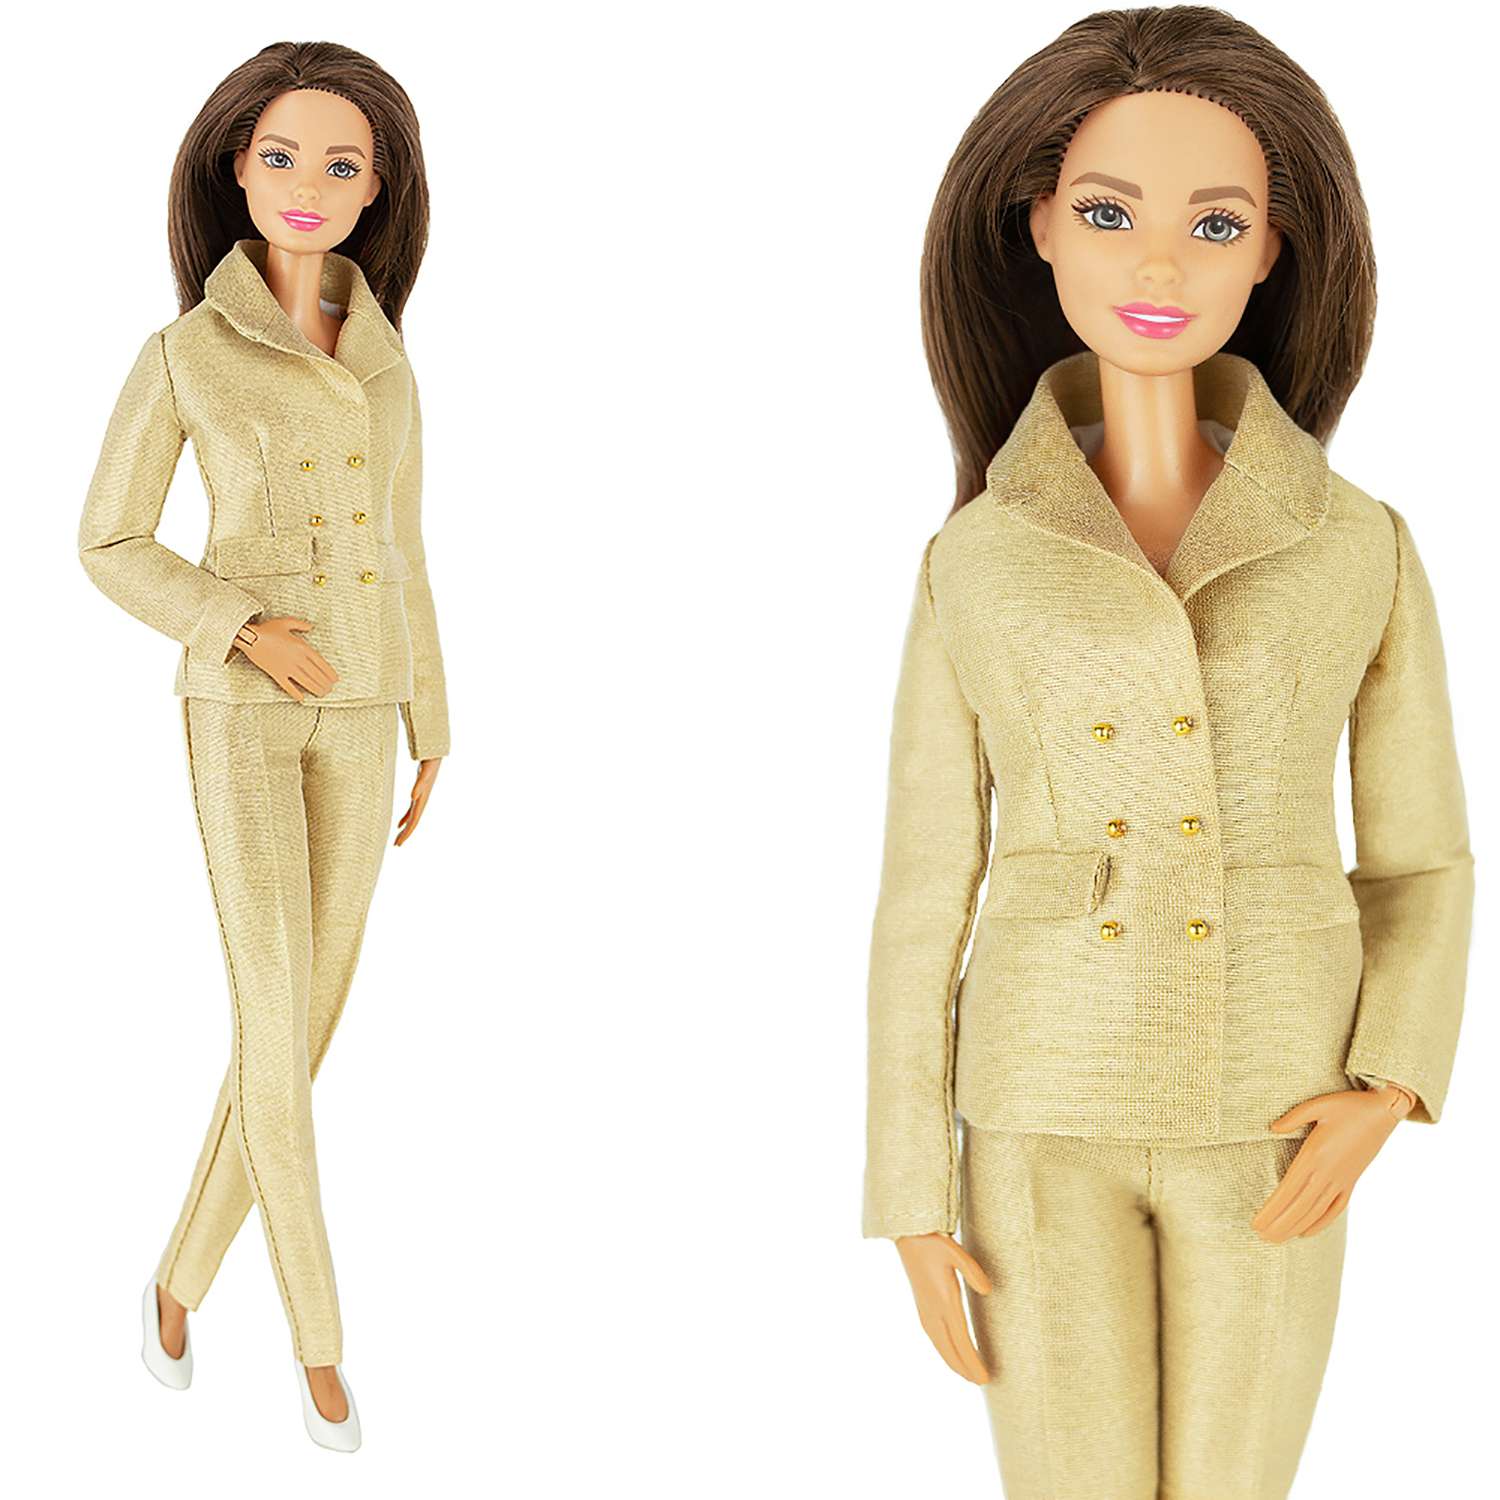 Шелковый брючный костюм Эленприв Золотой для куклы 29 см типа Барби FA-011-12 - фото 2